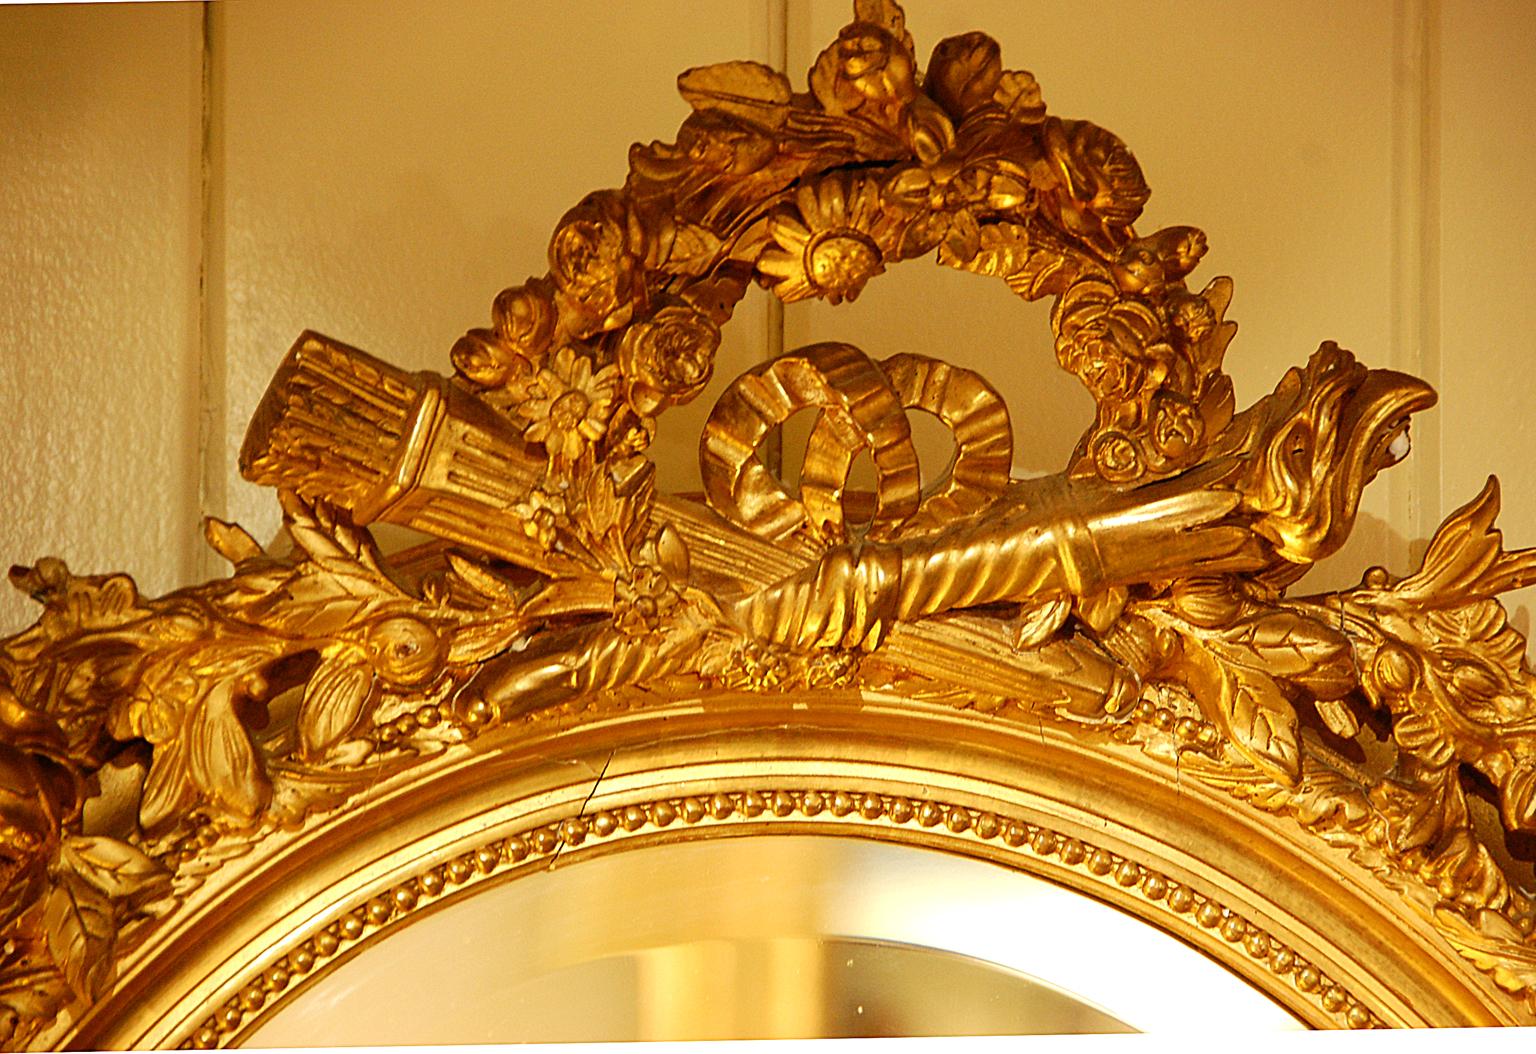 Miroir ovale français du XIXe siècle en feuille d'or vergée avec torche et carquois croisés entourés de motifs floraux dans le haut du miroir ; des feuilles et baies en volutes entourent le cadre et d'autres motifs floraux et feuillus dans le bas.